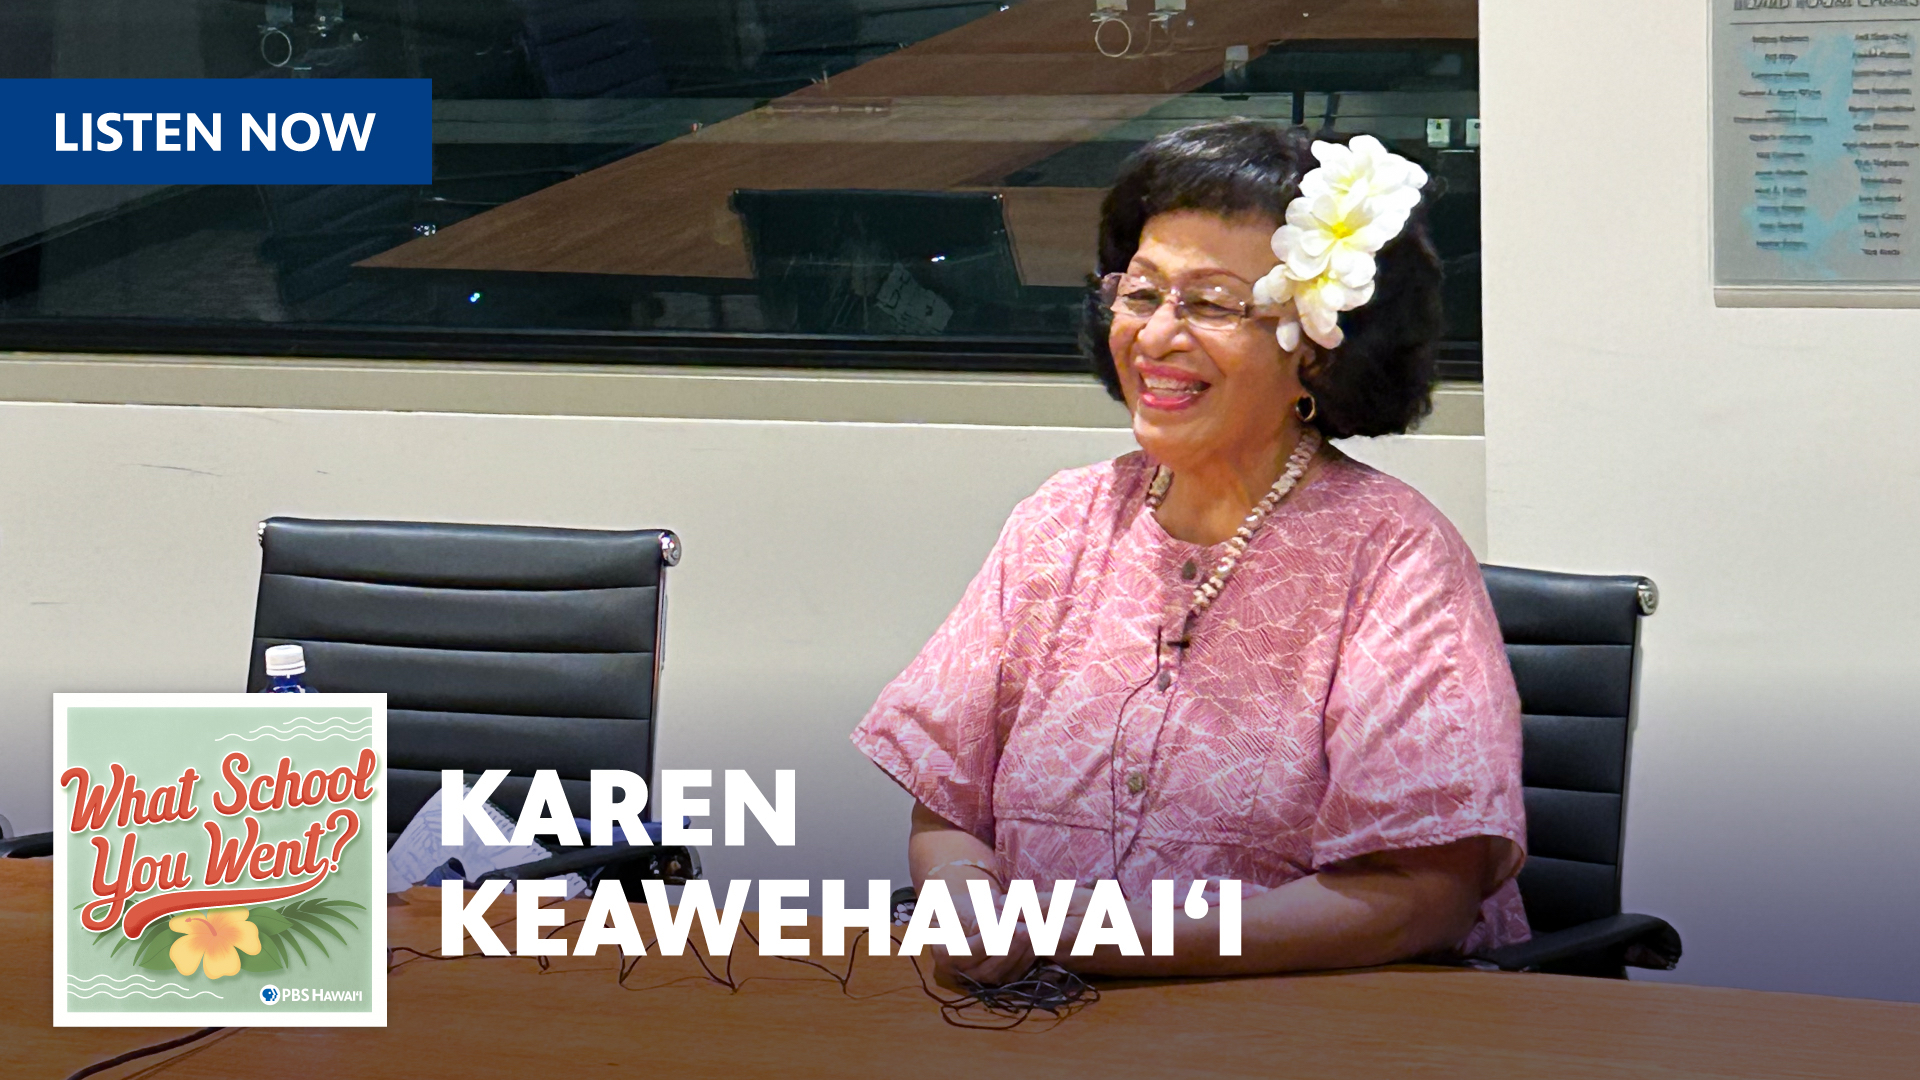 KAREN KEAWEHAWAIʻI